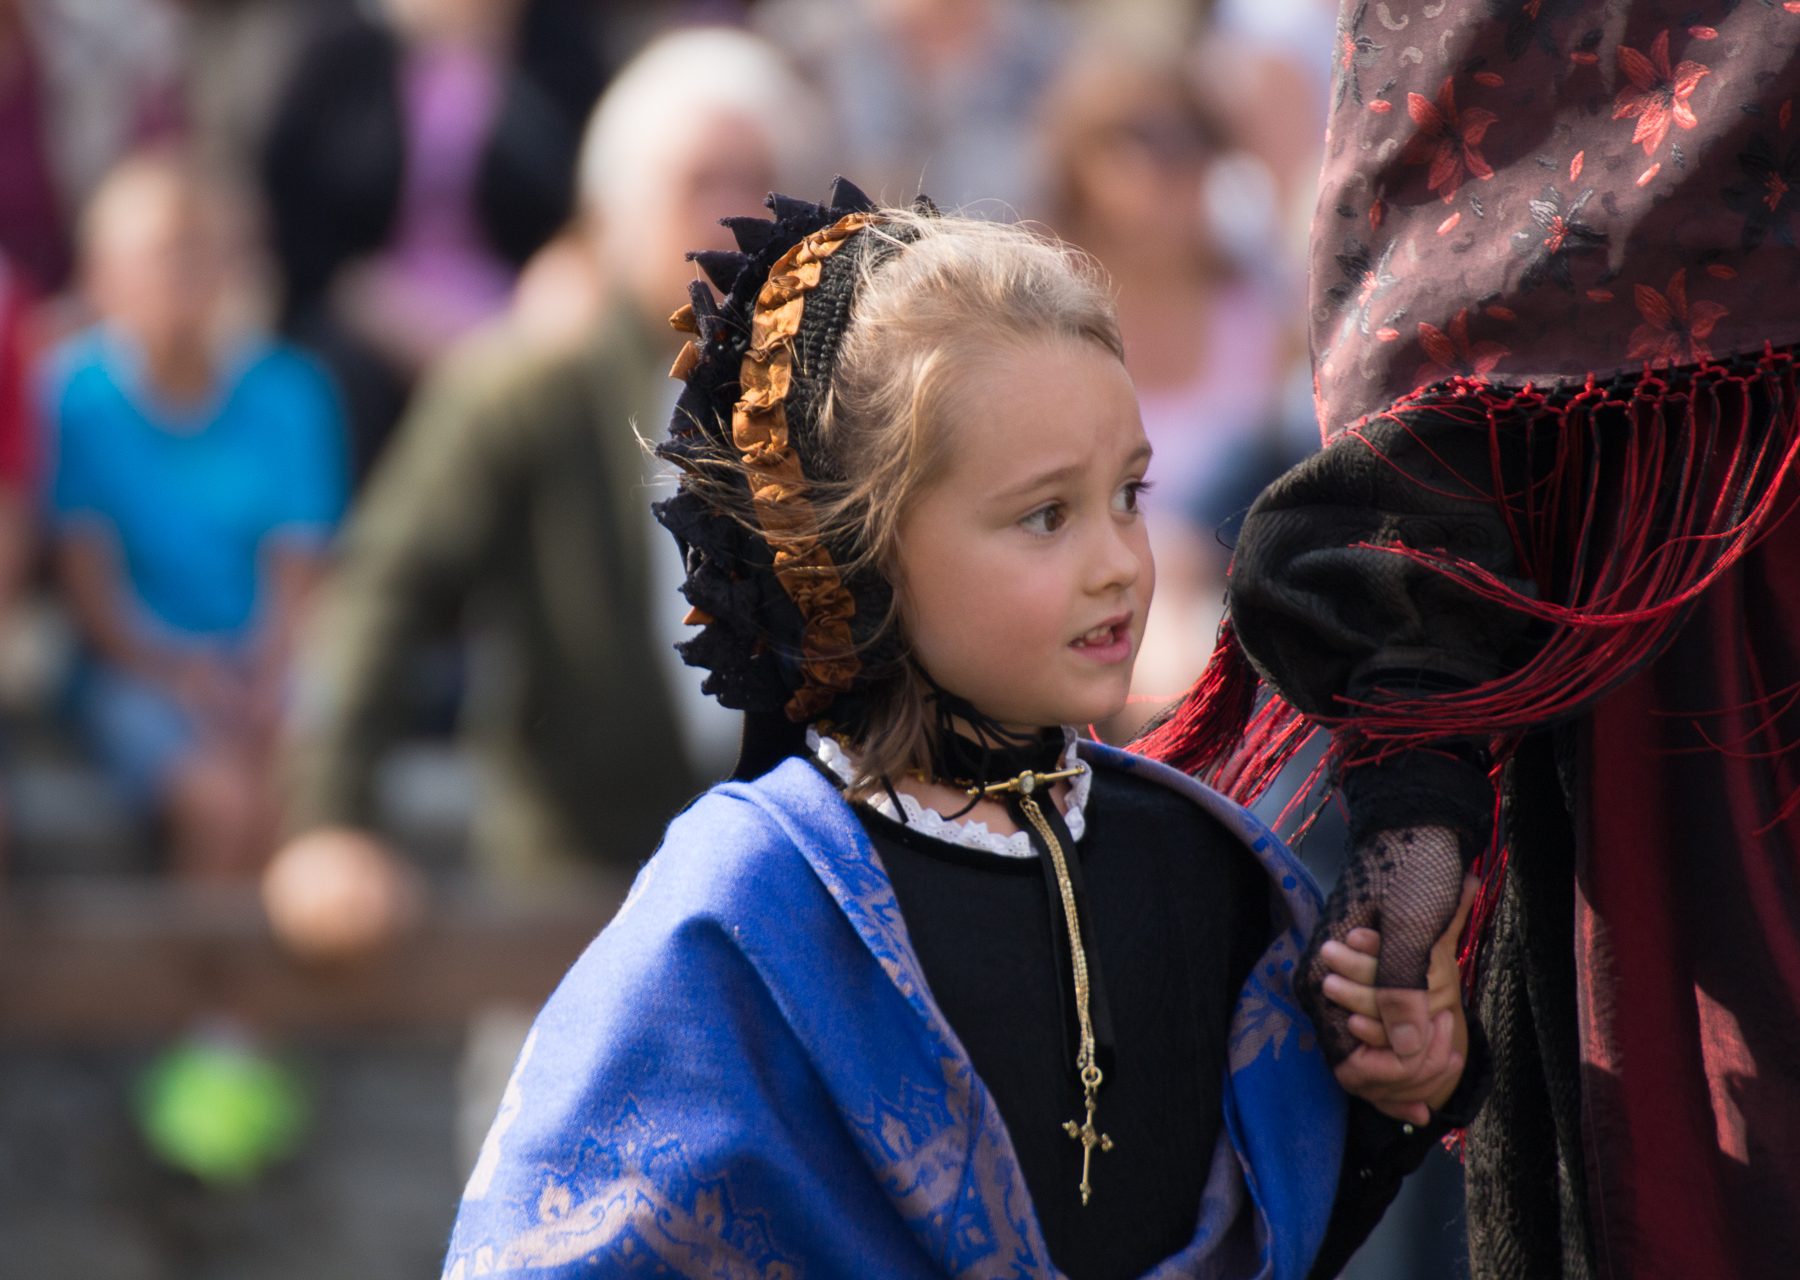 Little girl in traditional dress, Fenestrelle, 2017